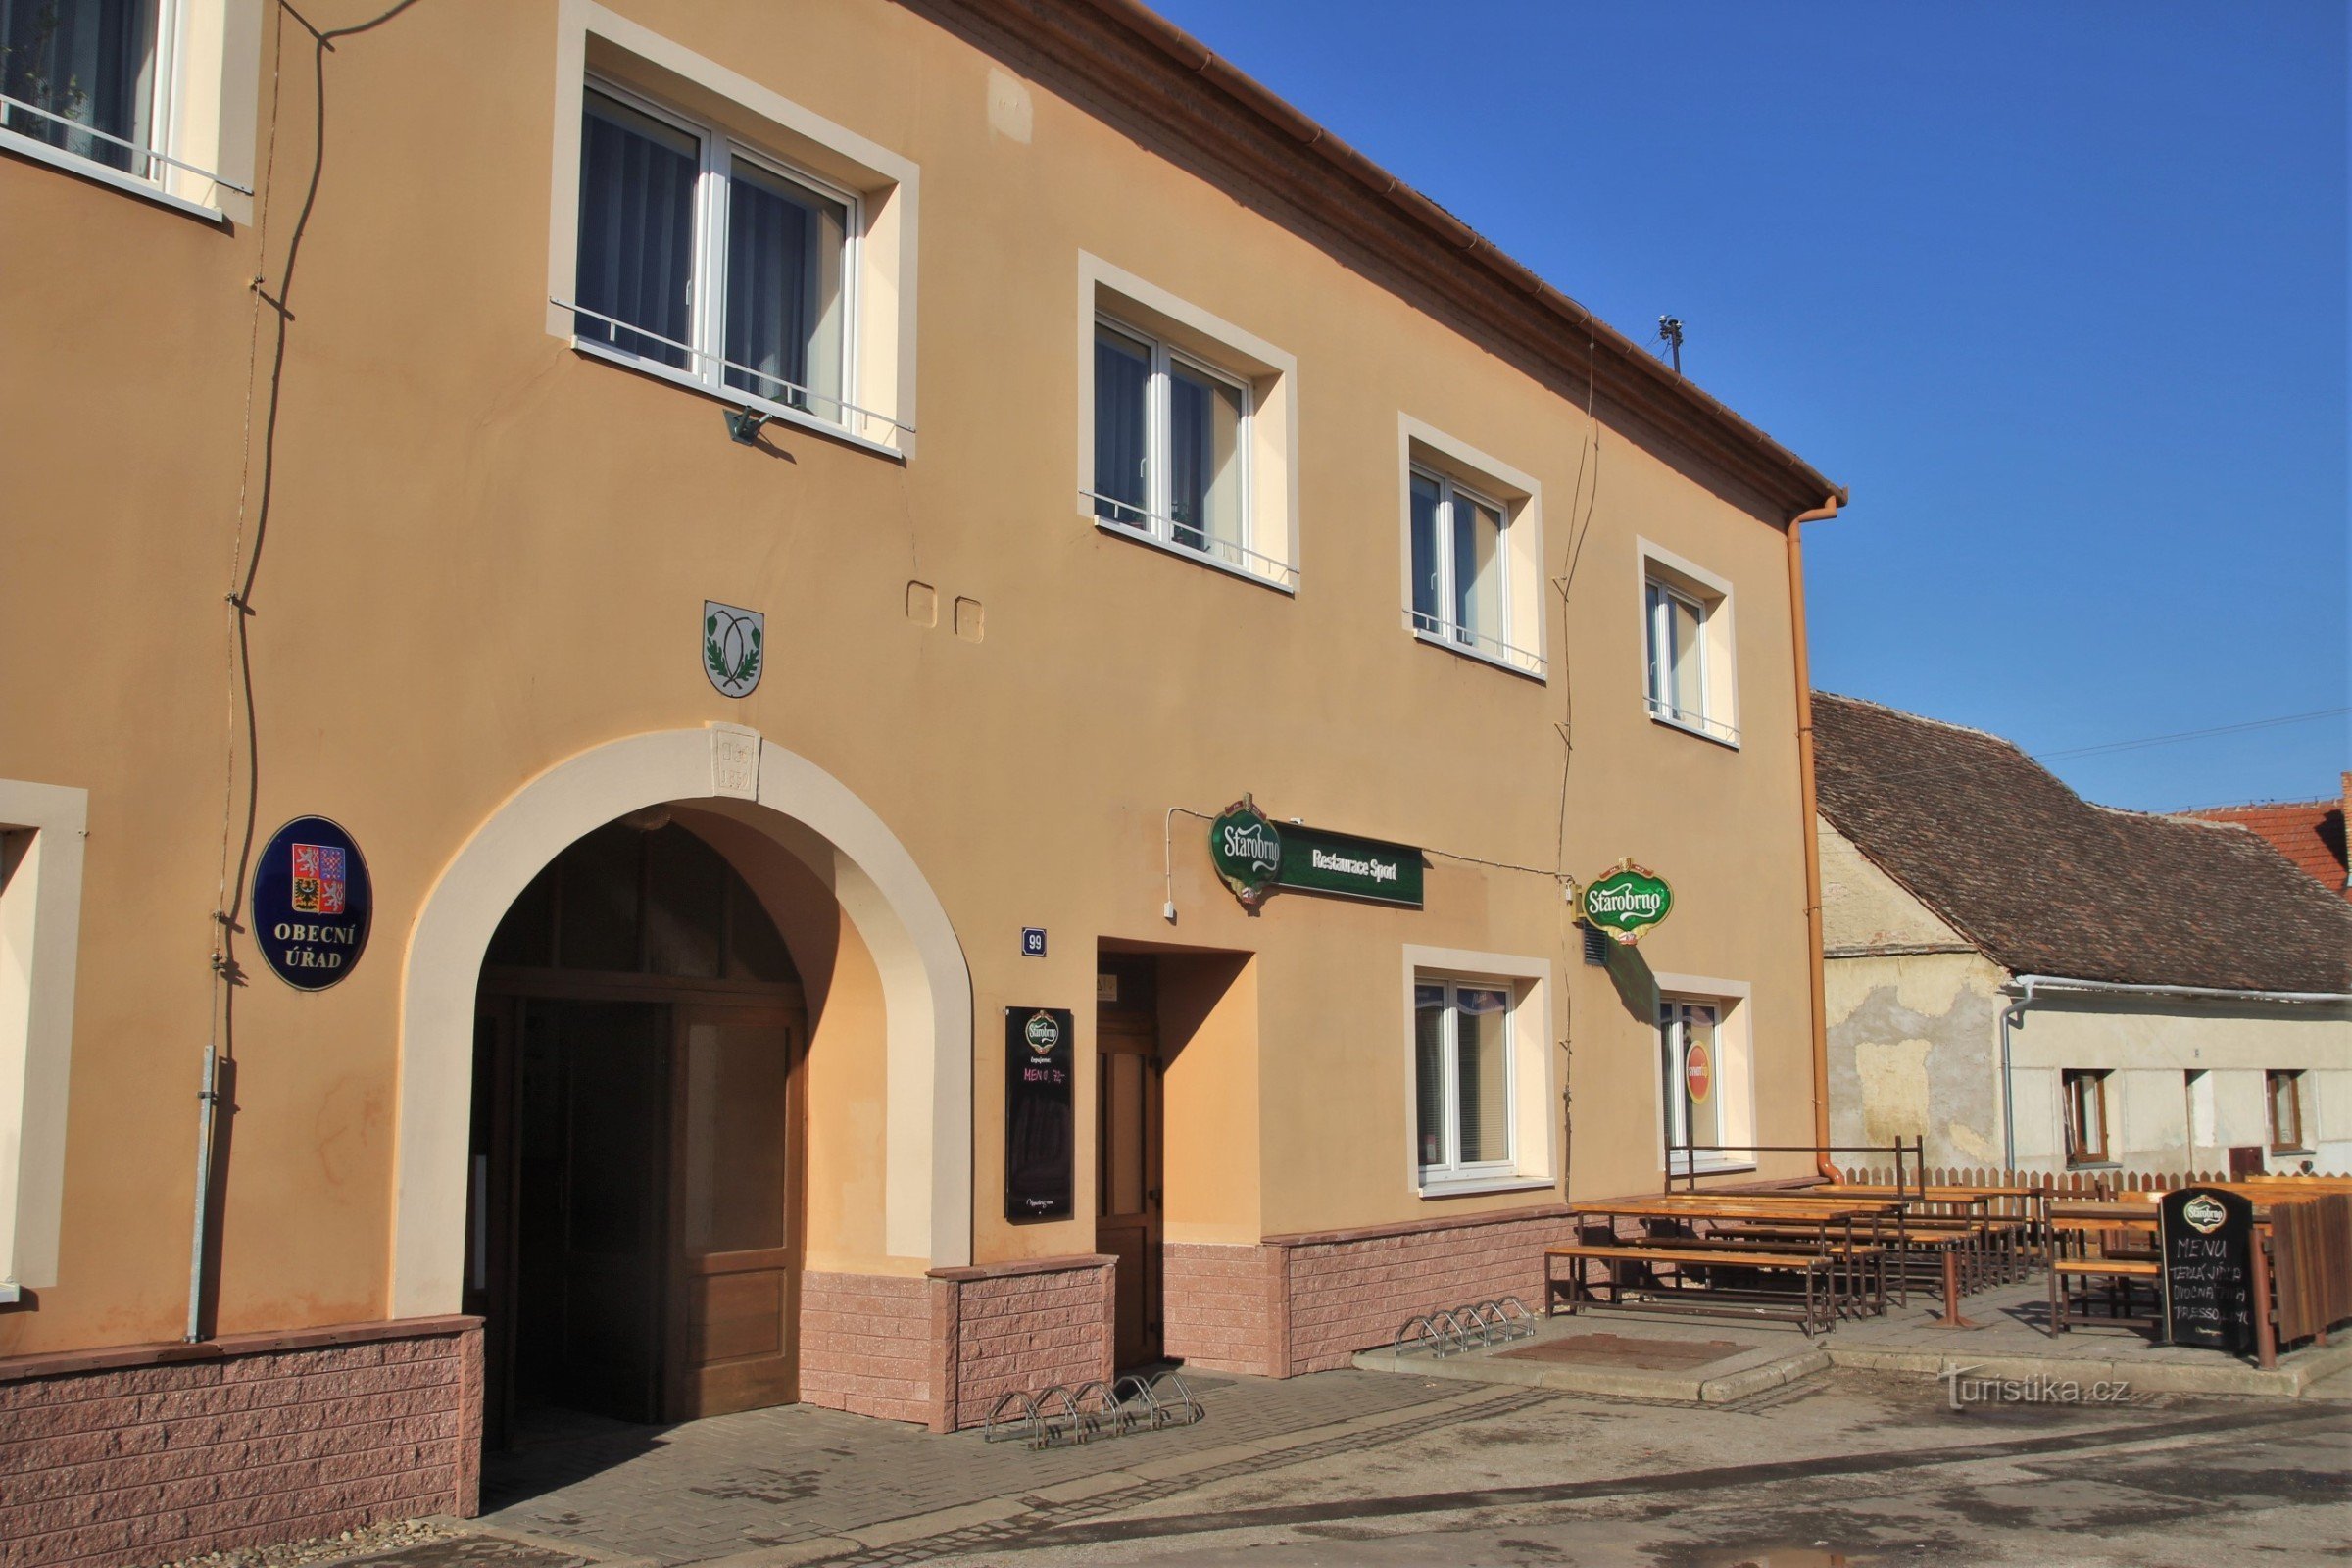 Pouzdřany - gemeentehuis en herberg in het dorp